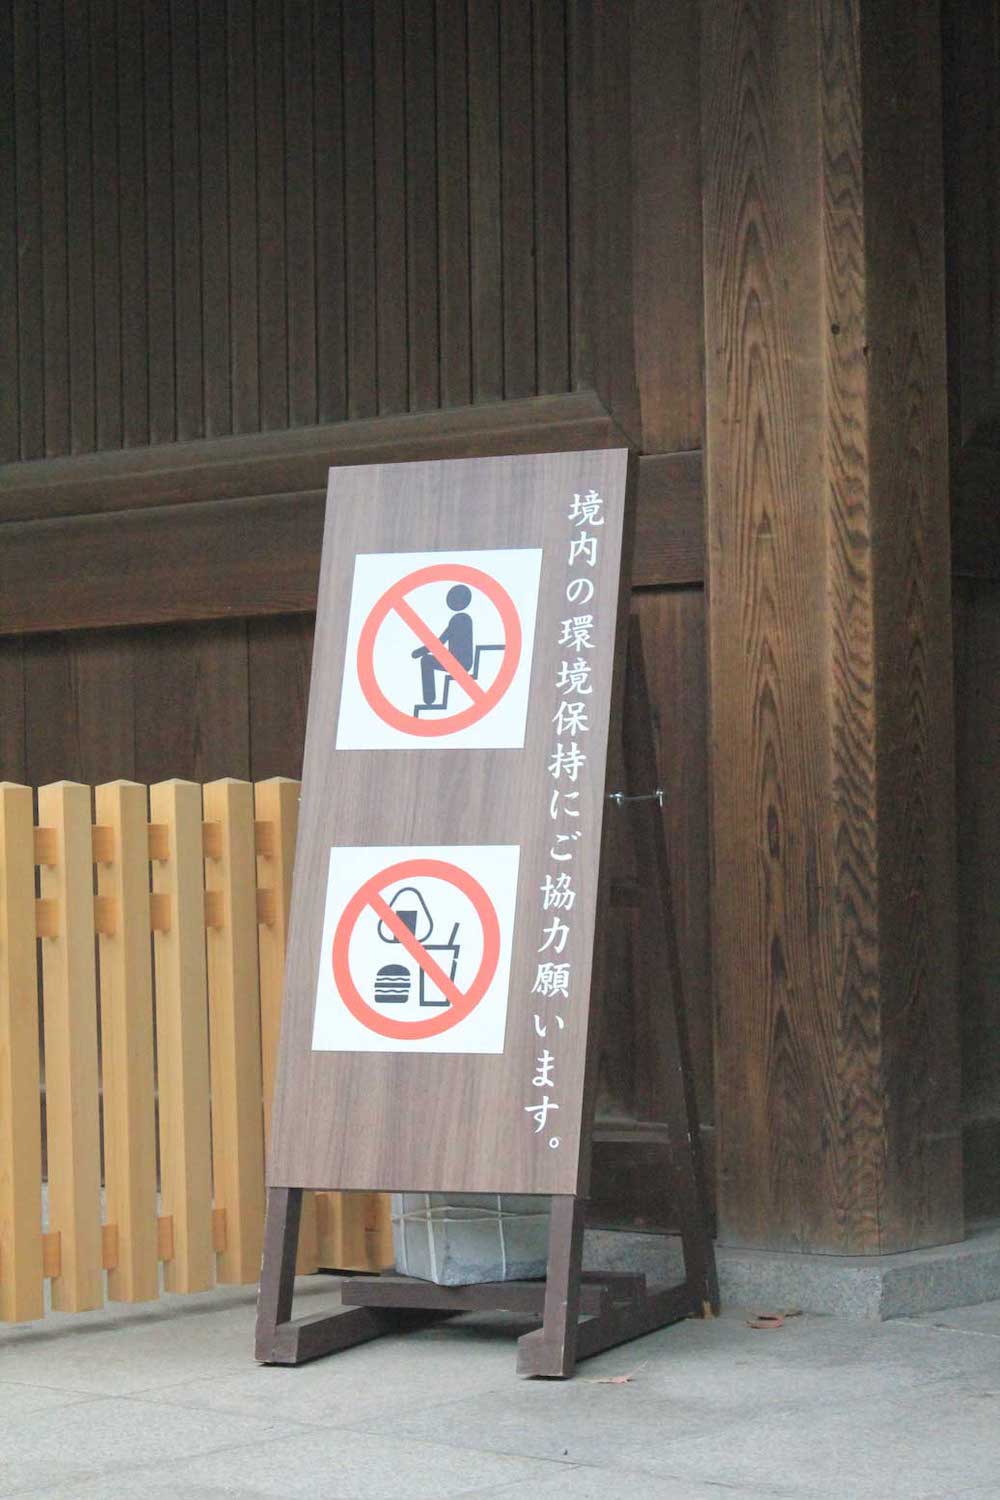 Panneau indiquant qu'il est interdit de s'asseoir et de manger